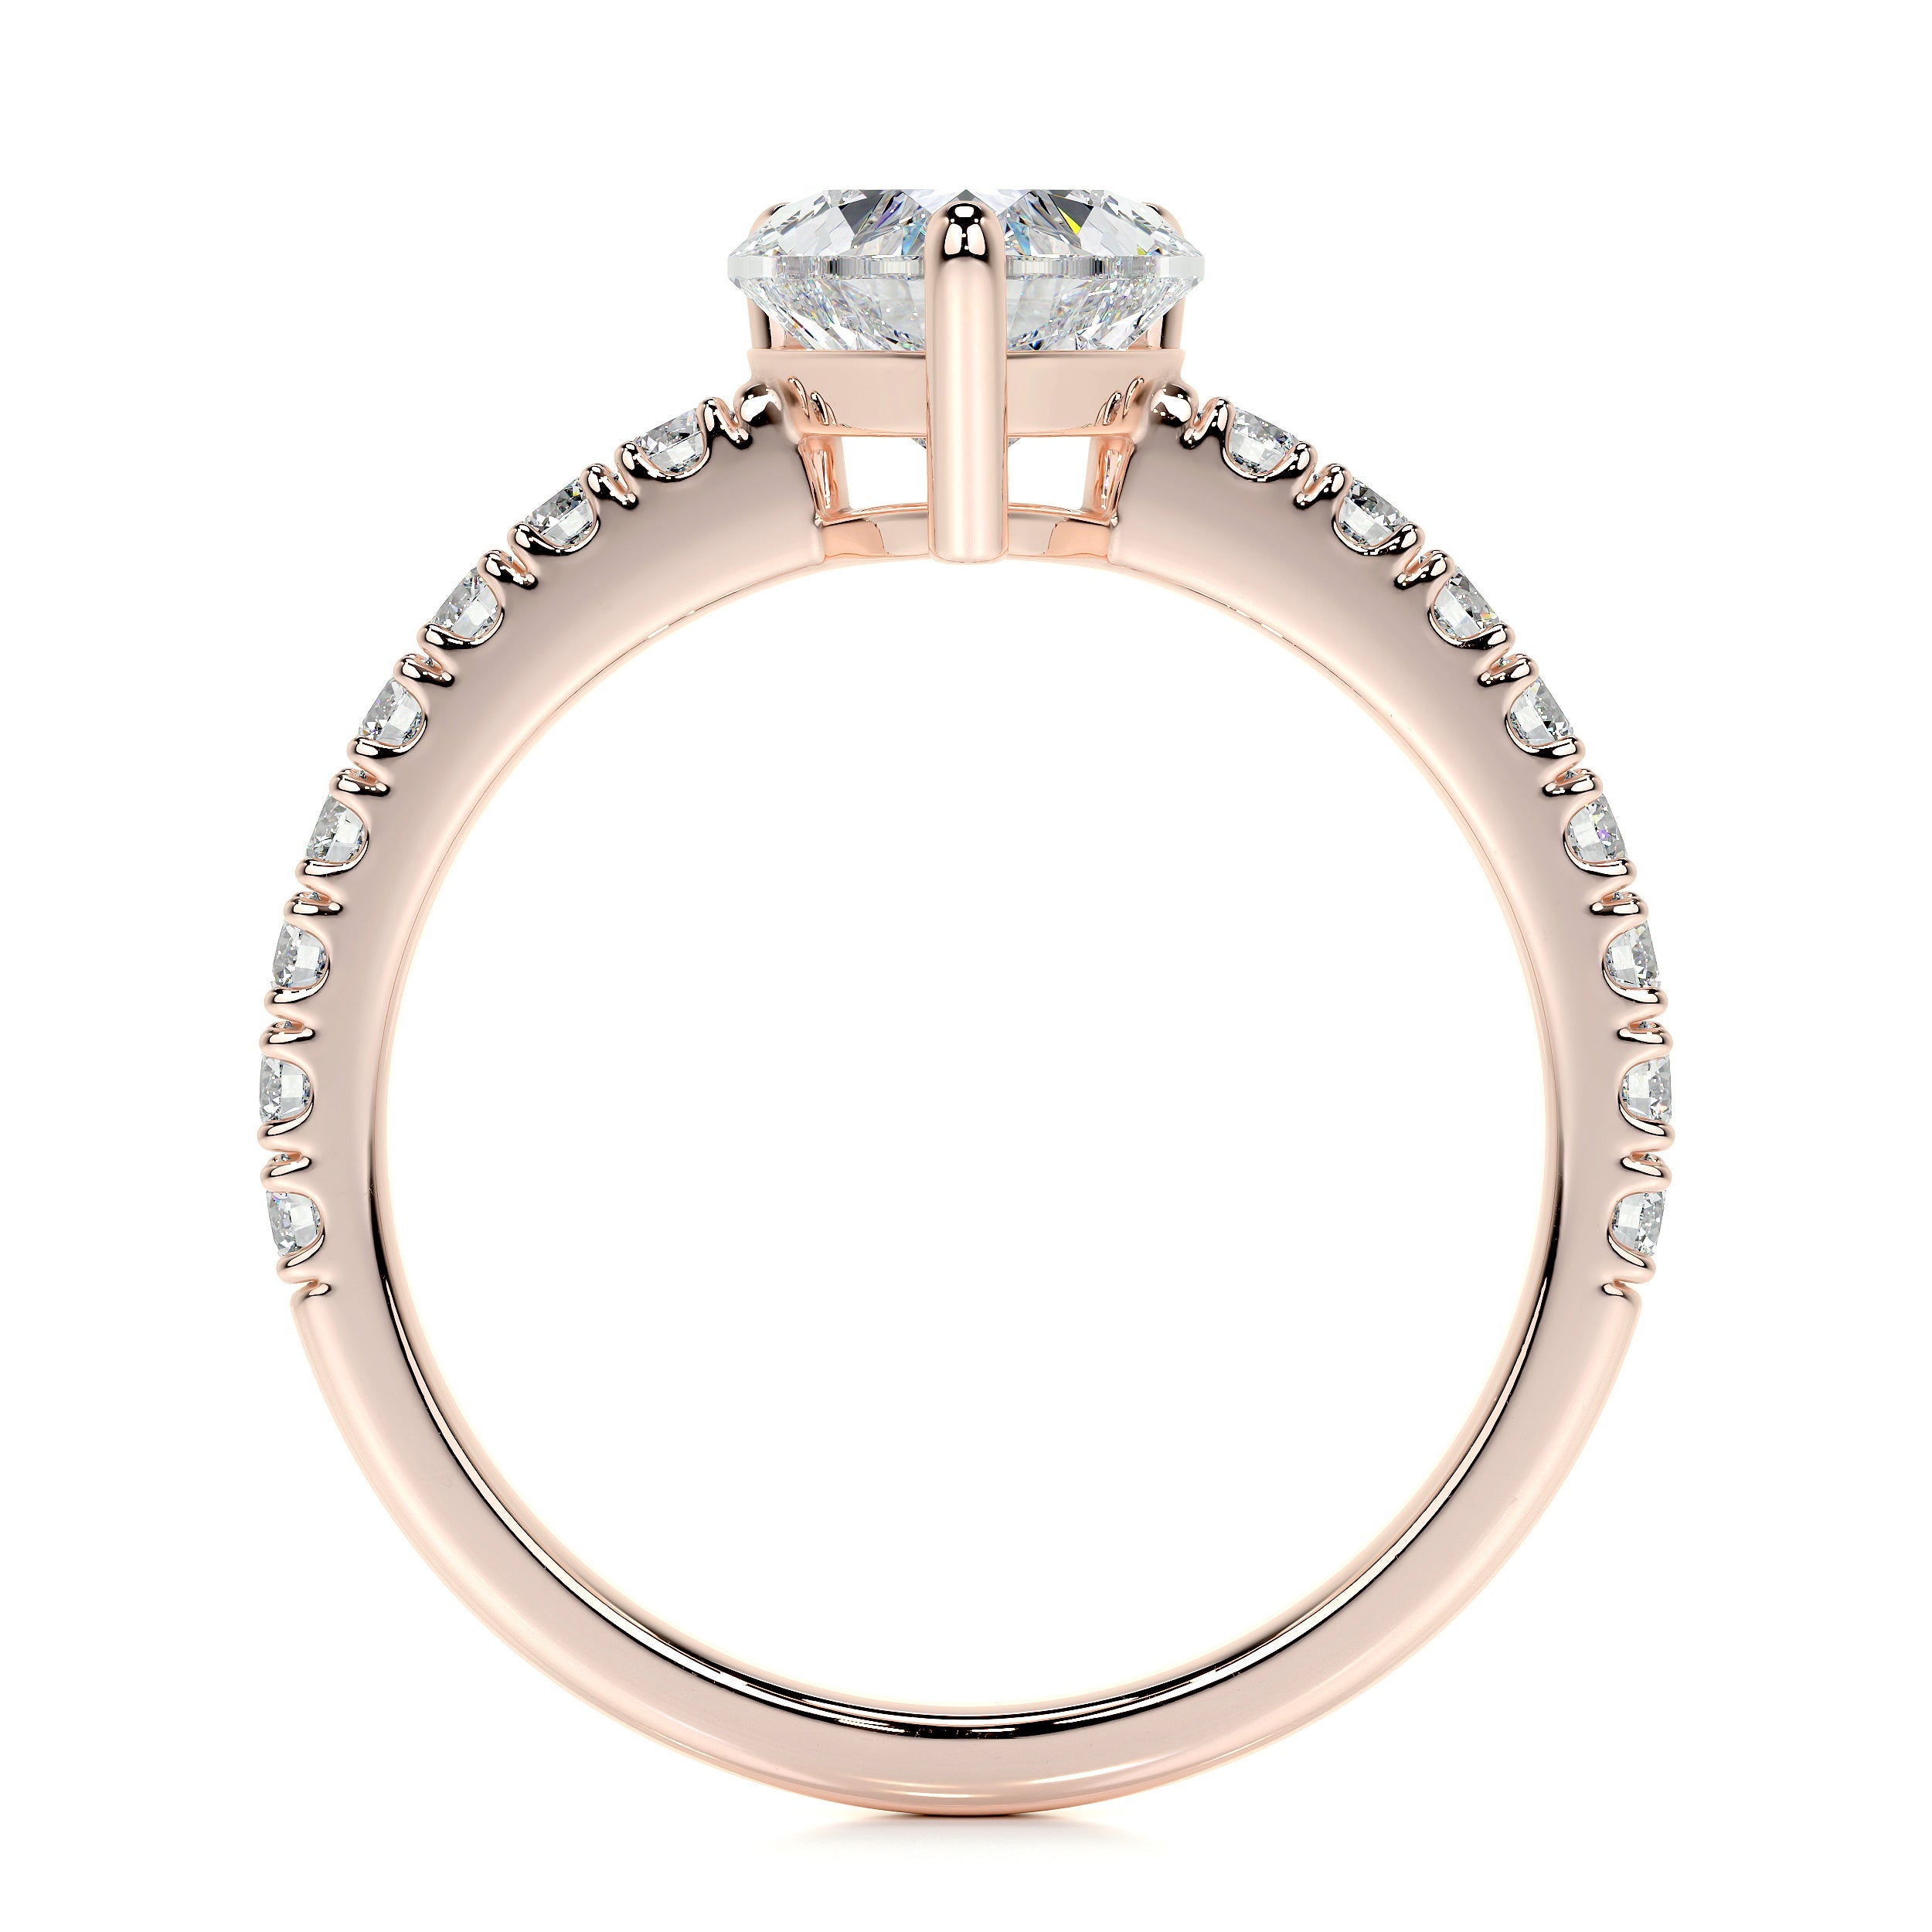 Audrey Lab Grown Diamond Ring   (1.3 Carat) -14K Rose Gold